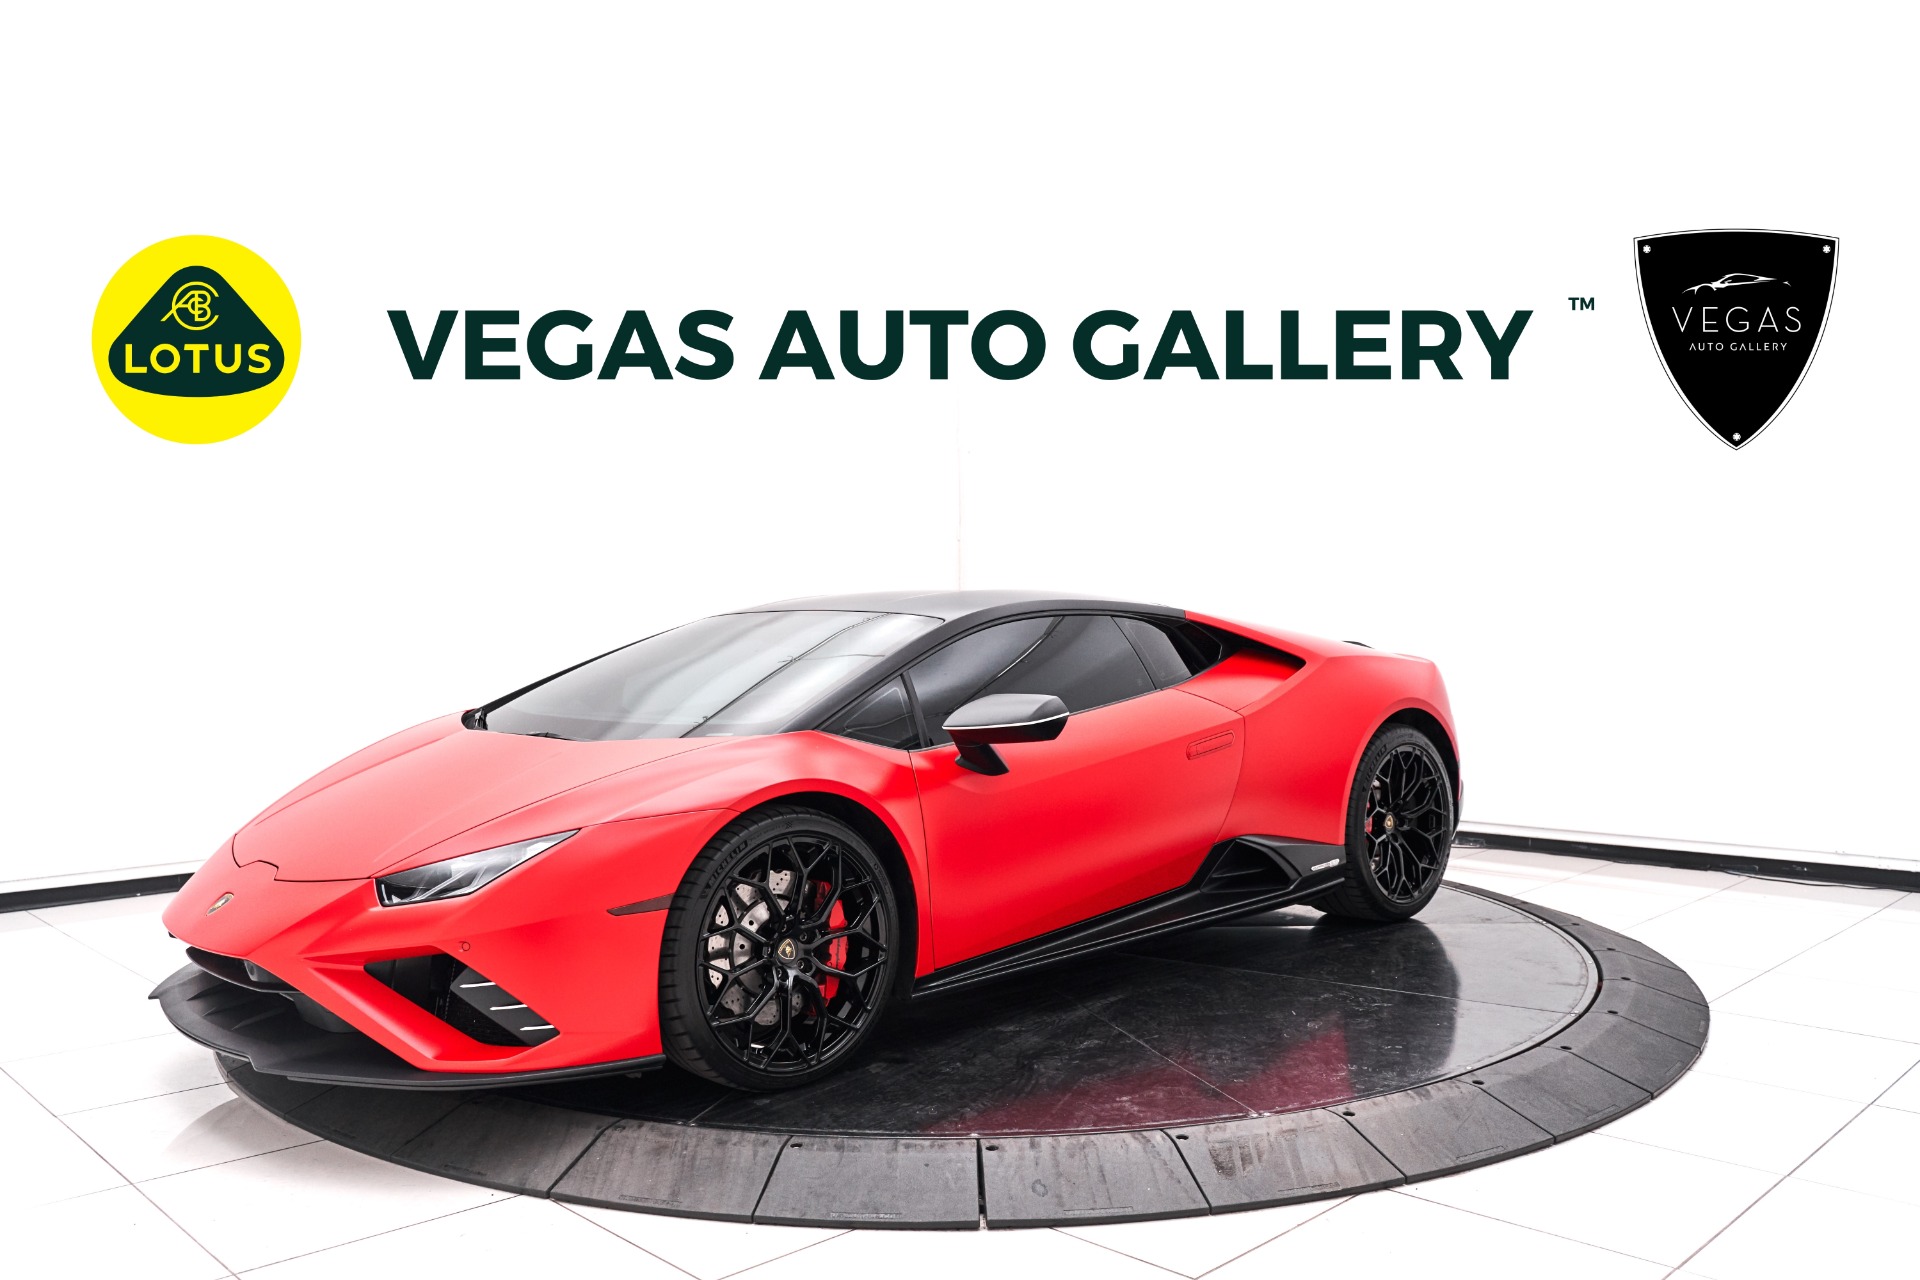 LV CARS - 60 Photos & 55 Reviews - 2445 E Sahara Ave, Las Vegas